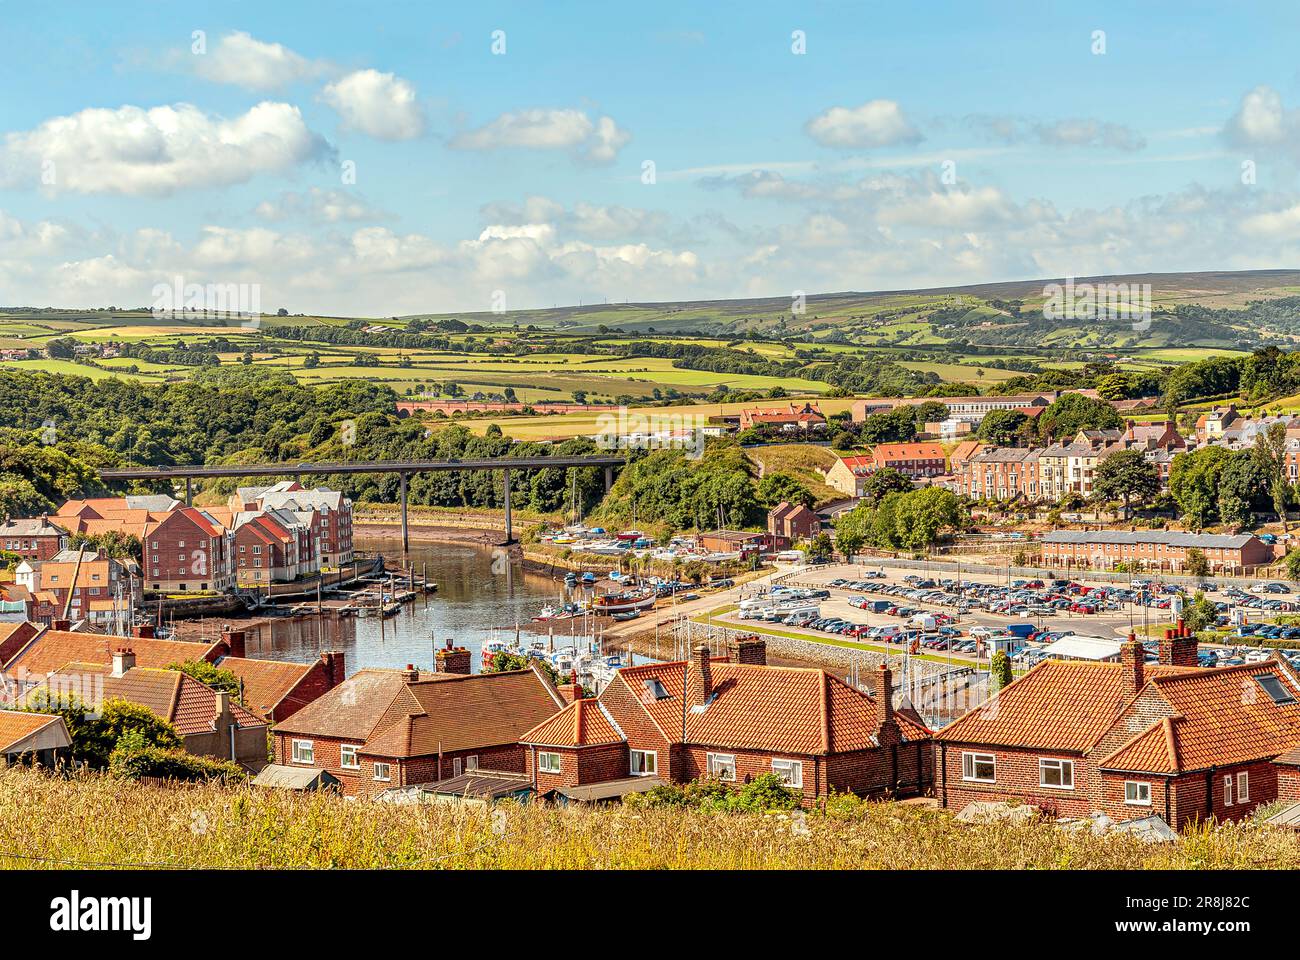 Erhöhter Blick über den Fluss Esk und die Landschaft bei Whitby, England, Großbritannien Stockfoto